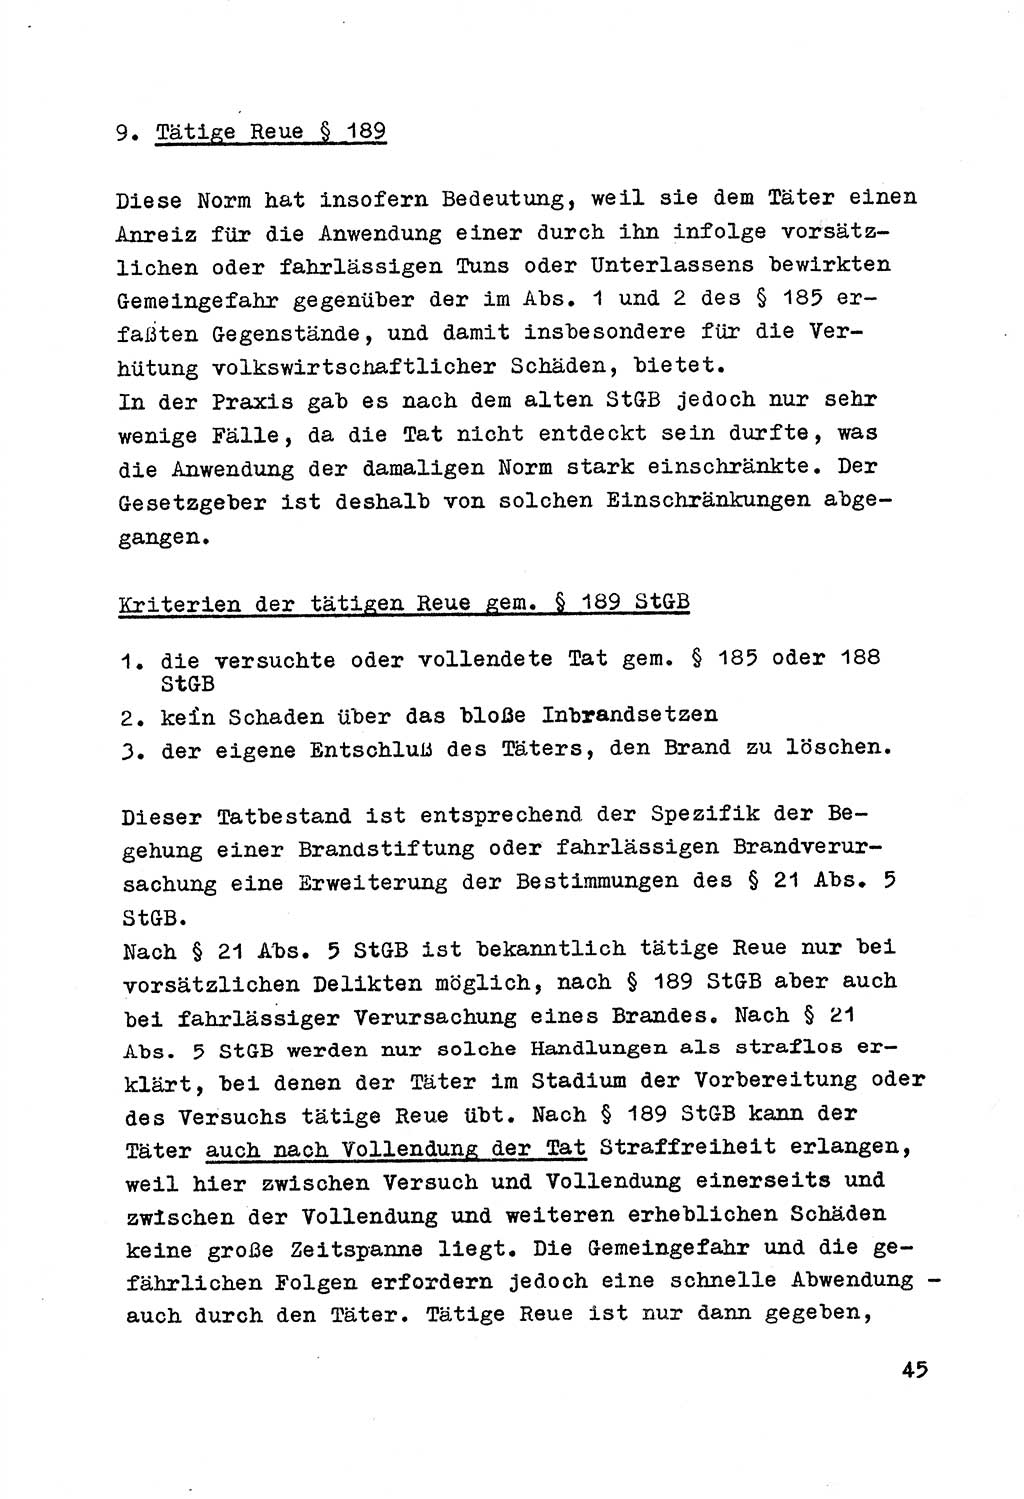 Strafrecht der DDR (Deutsche Demokratische Republik), Besonderer Teil, Lehrmaterial, Heft 7 1970, Seite 45 (Strafr. DDR BT Lehrmat. H. 7 1970, S. 45)